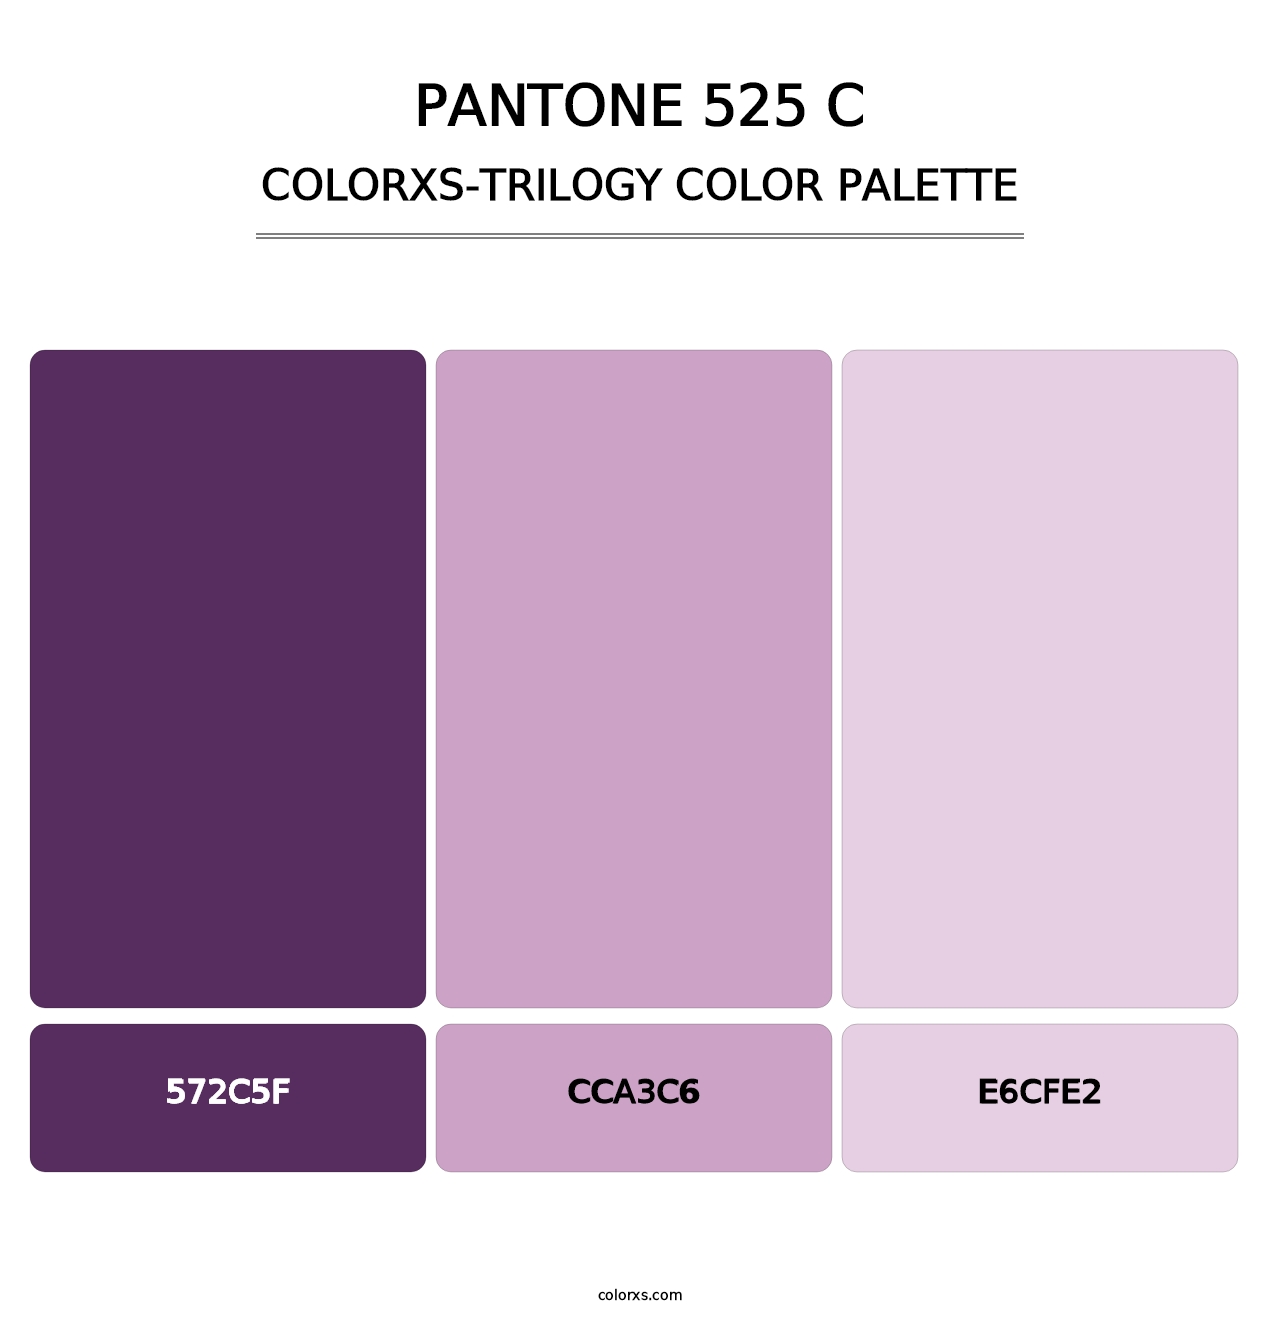 PANTONE 525 C - Colorxs Trilogy Palette